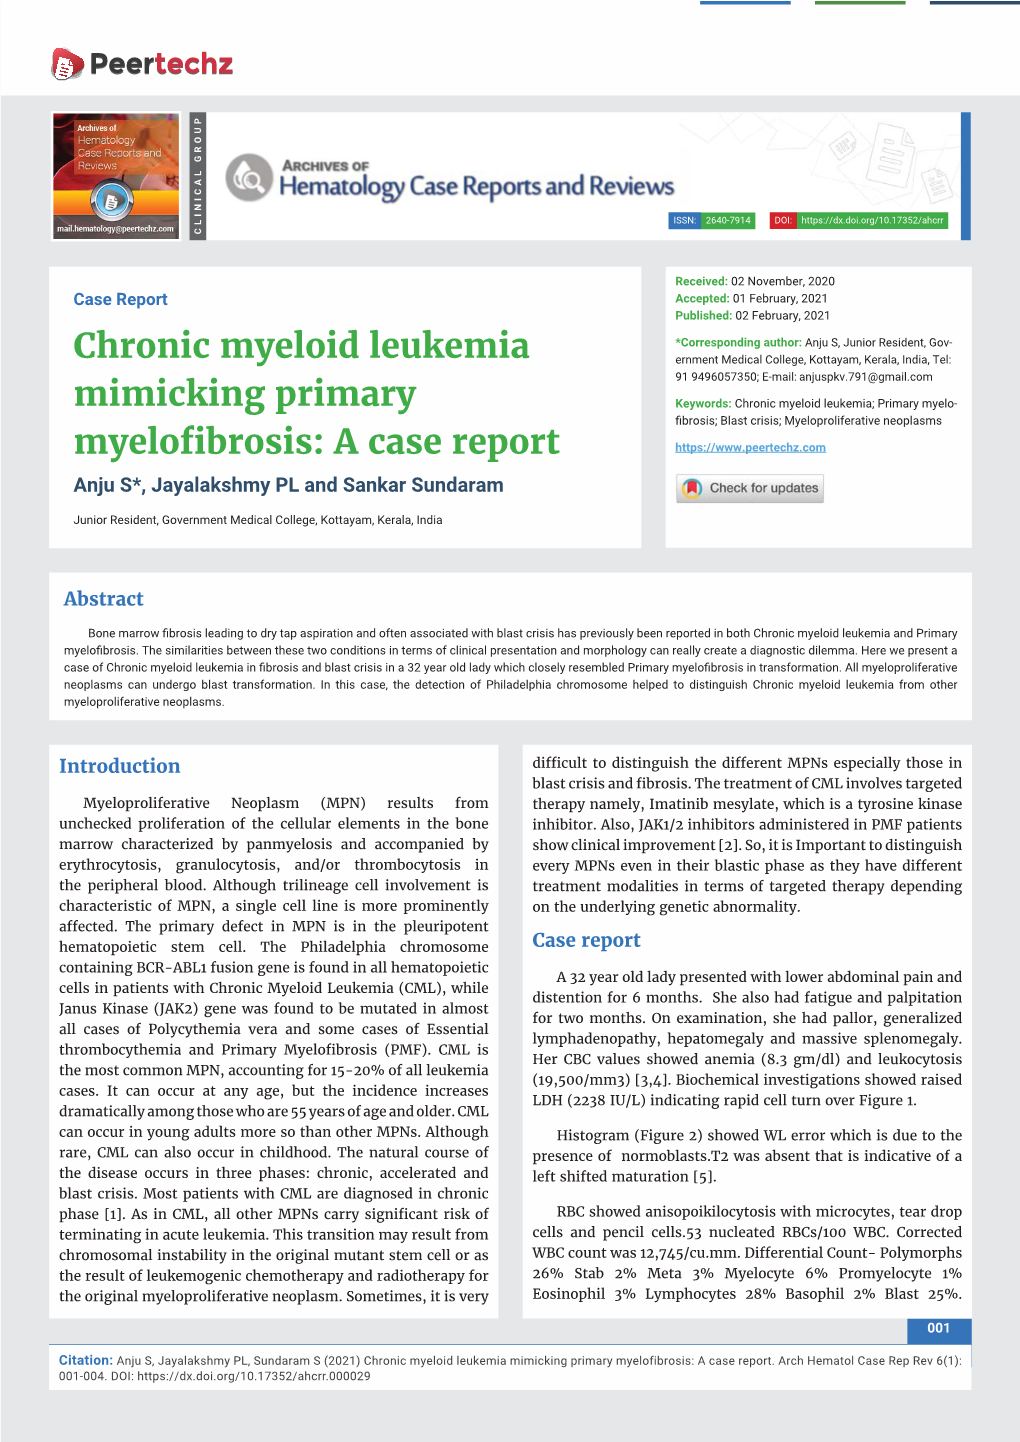 Chronic Myeloid Leukemia Mimicking Primary Myelofibrosis: a Case Report